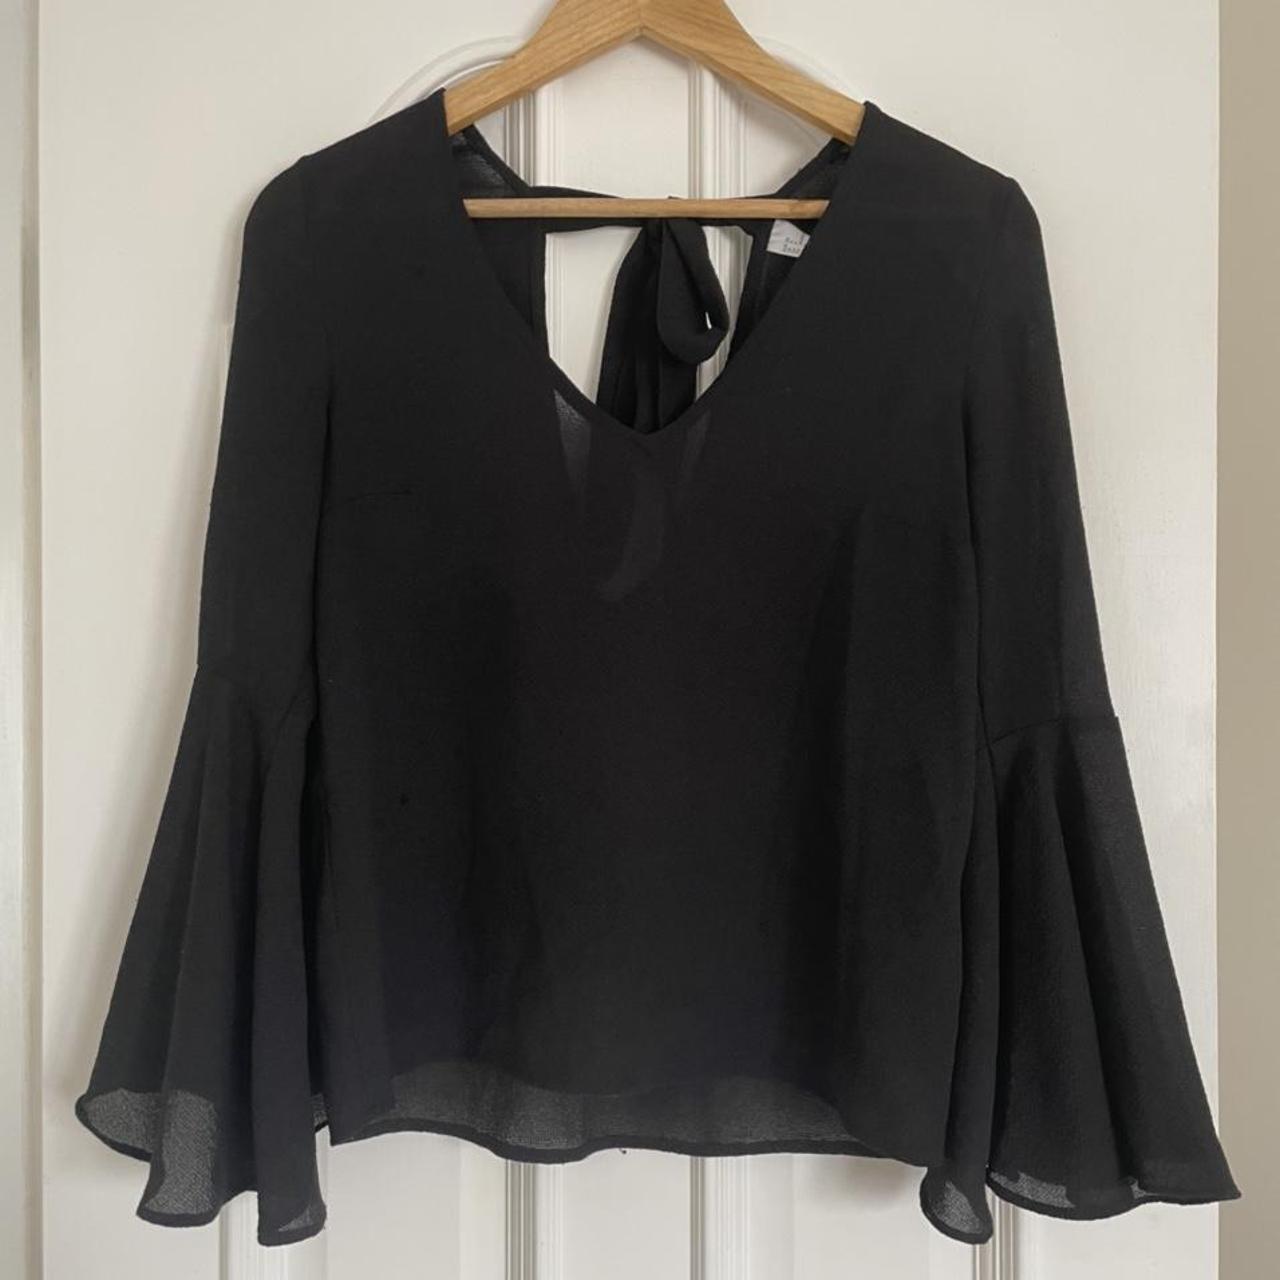 H&M black sheer blouse with v neck, v back and tie... - Depop